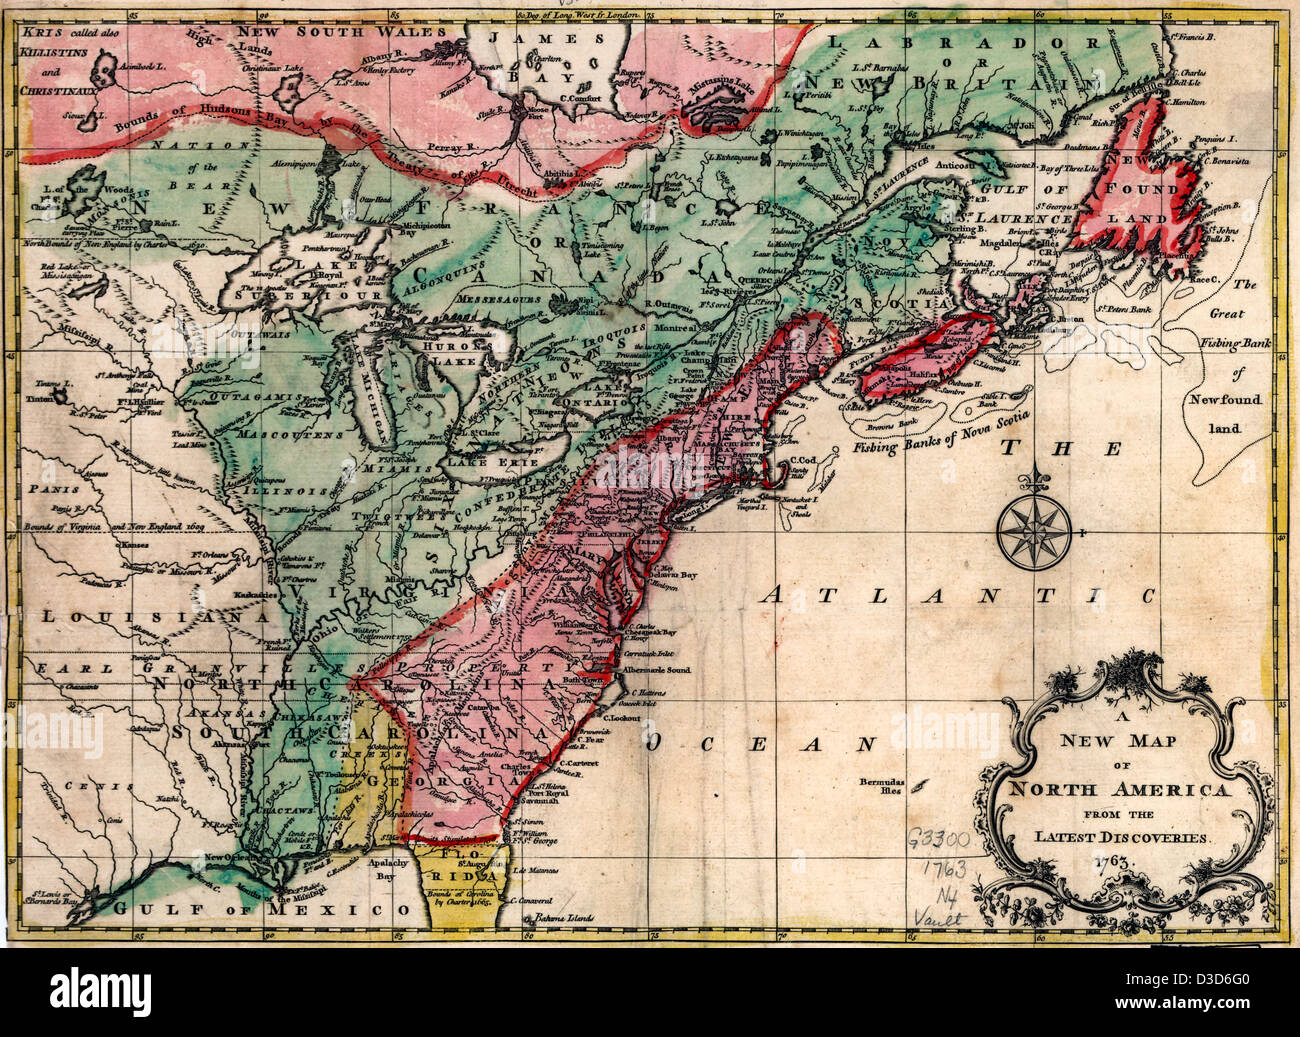 Eine neue Karte von Nordamerika von den neuesten Entdeckungen. 1763 Stockfoto